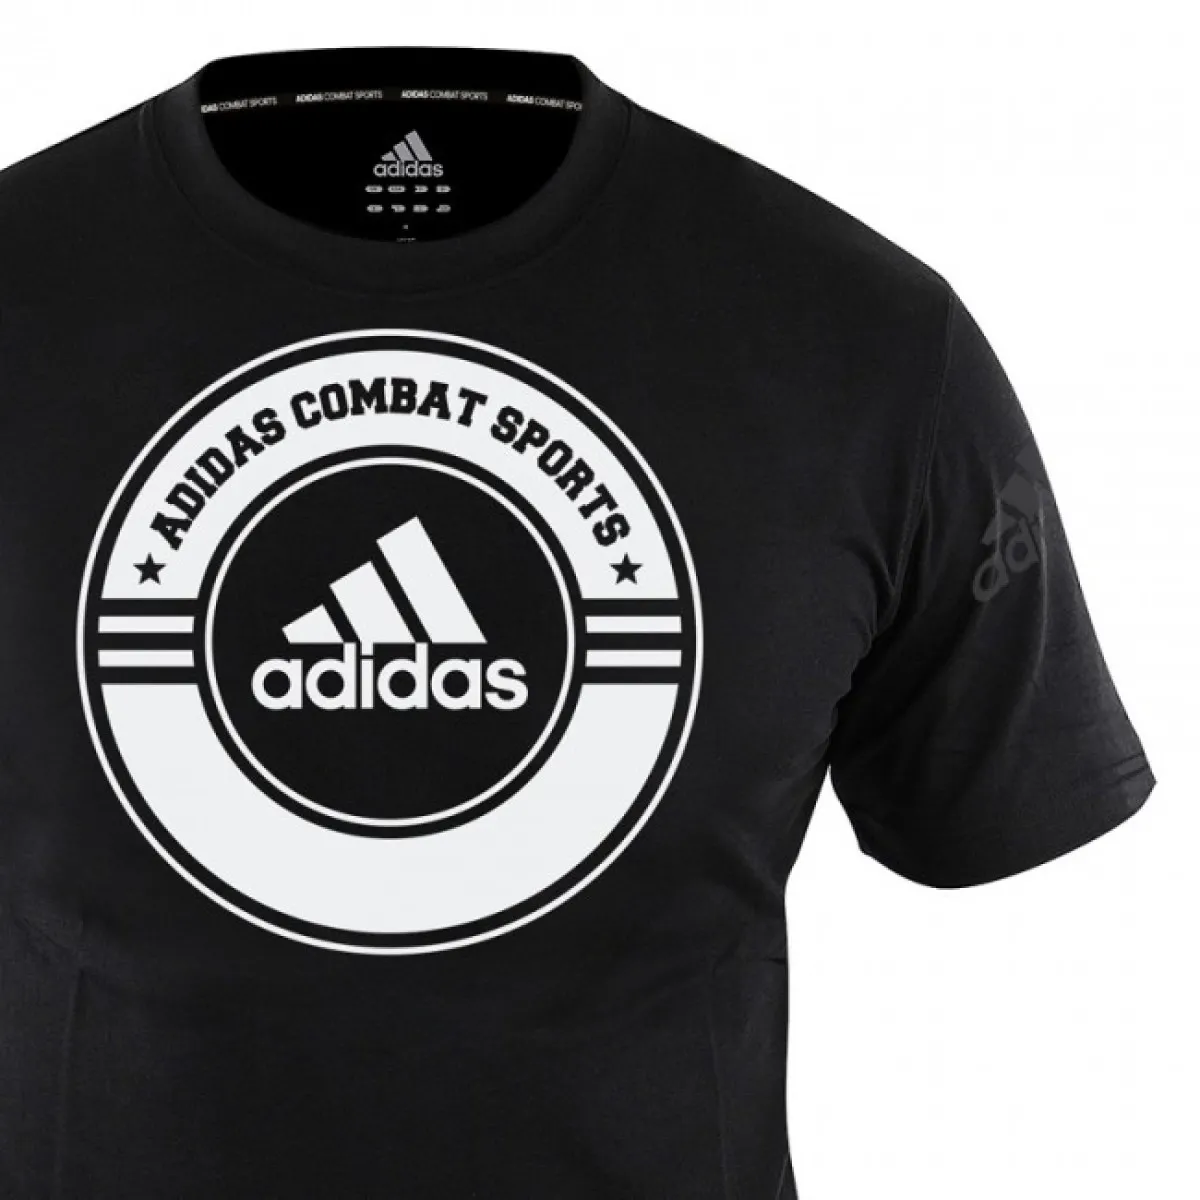 adidas T-Shirt Combat Sports schwarz/weiß